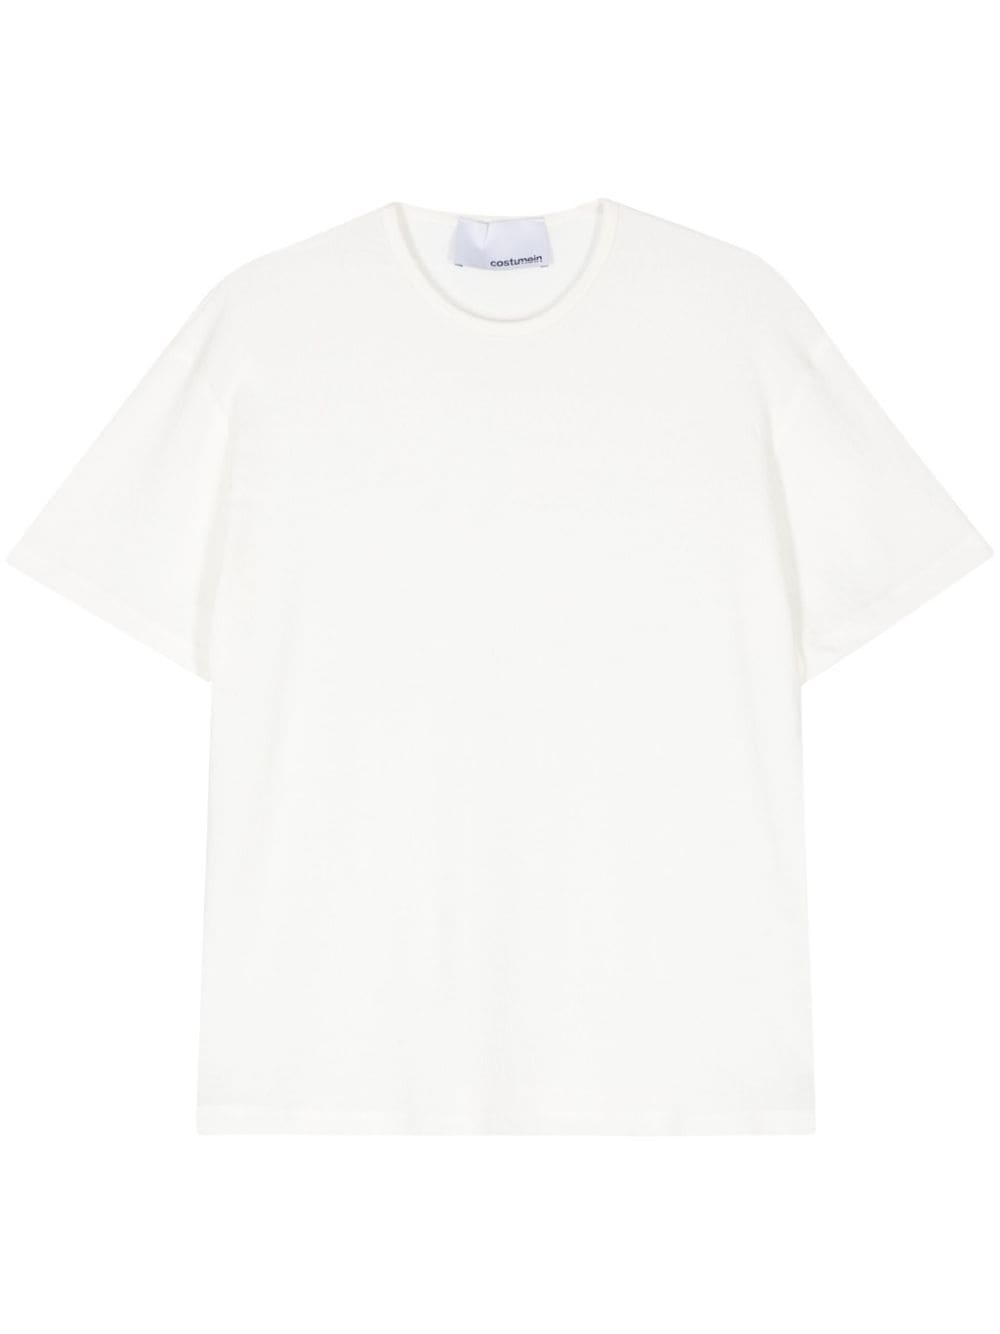 Costumein short-sleeve cotton T-shirt - White von Costumein